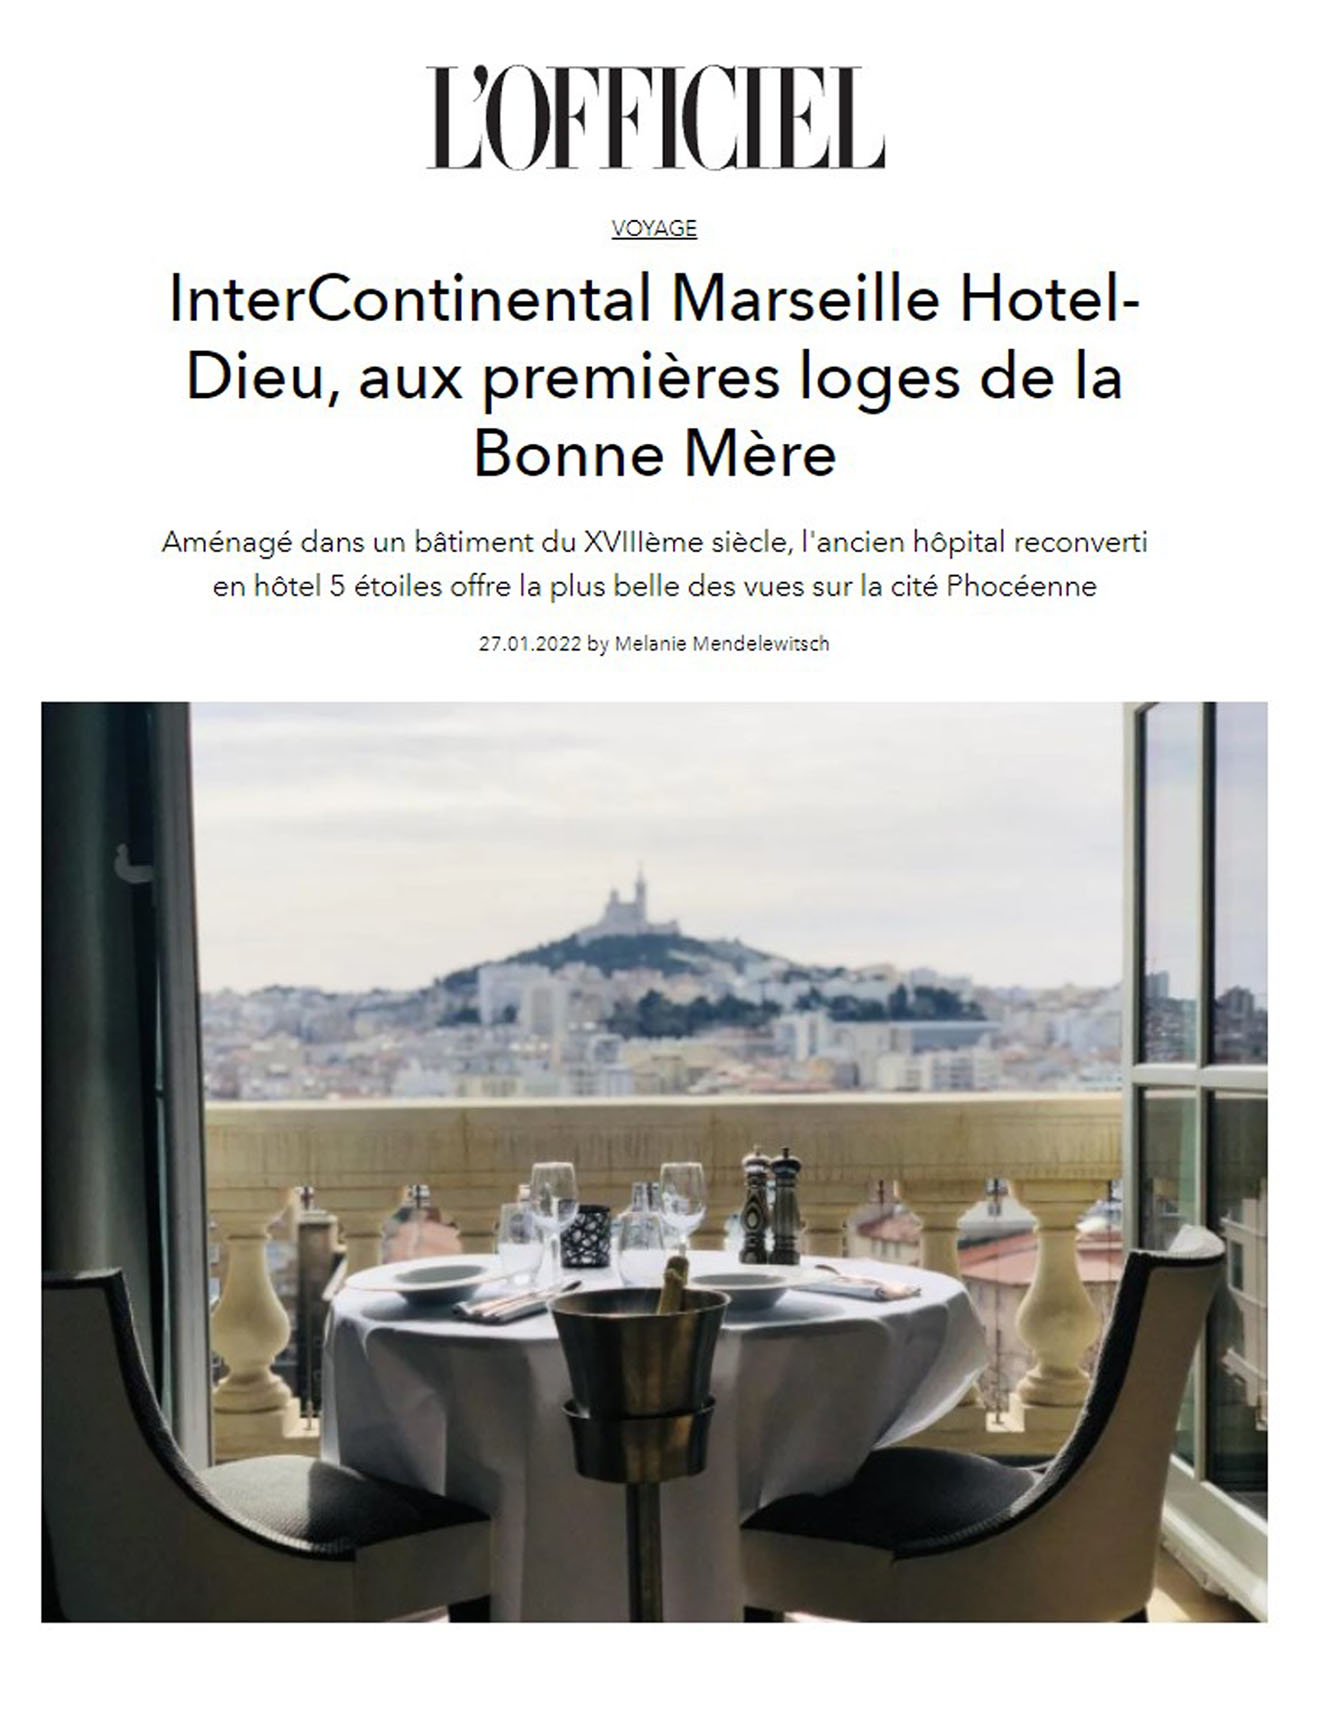 Article de L'officiel sur L'InterContinental Marseille Hôtel Dieu, un ancien hôpital transformé en hôtel 5 étoiles, design signé jean-philippe nuel